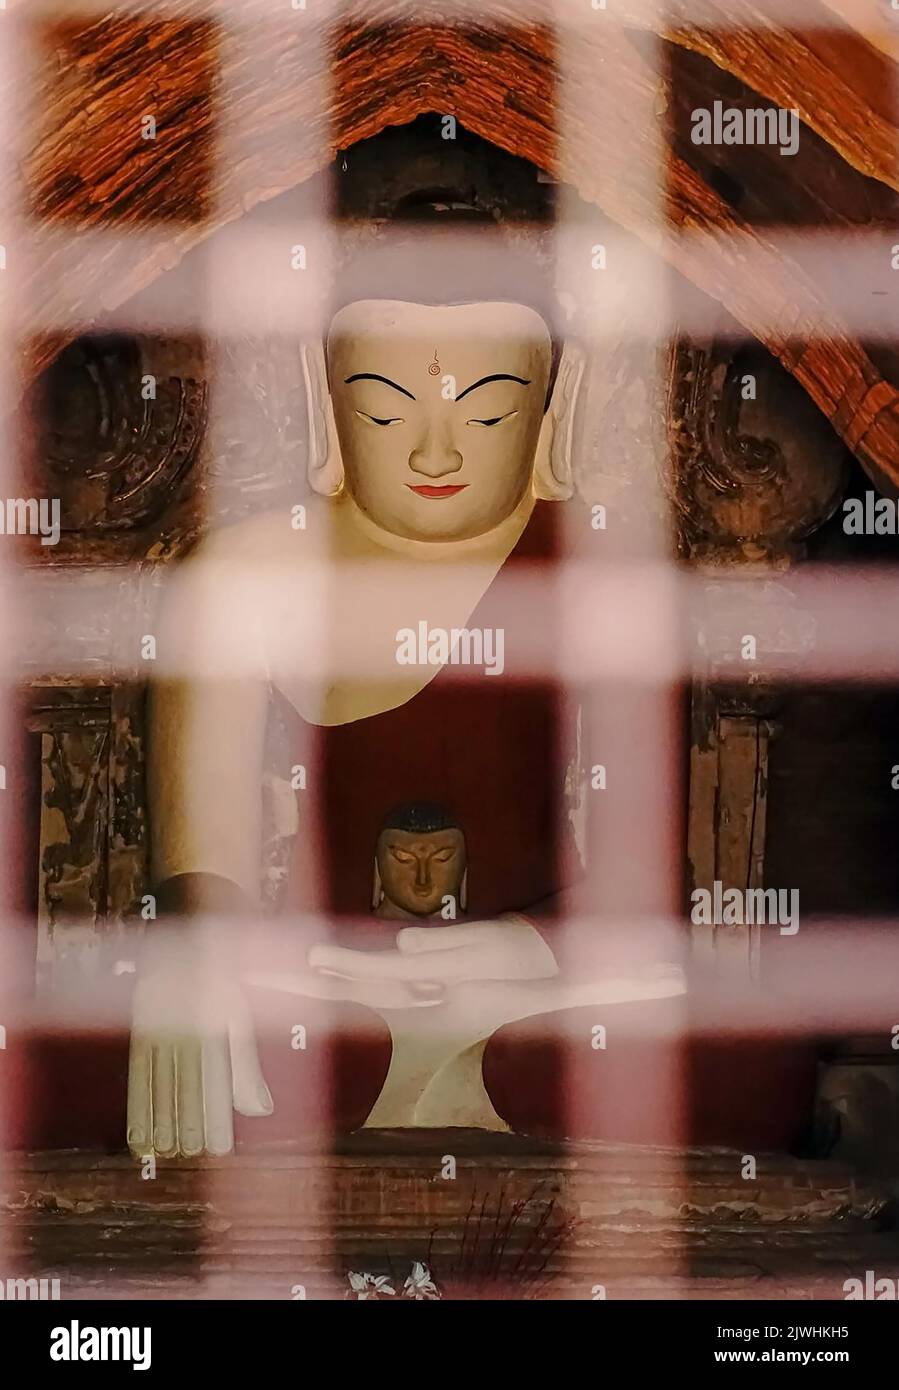 Bagan, Myanmar. 13th ago, 2022. Una statua di Buddha in uno dei templi di Bagan. 'Città di mille pagode' si chiama Bagan. Il sito patrimonio dell'umanità è considerato uno dei più importanti siti di templi in tutto il sud-est asiatico. Per molti in Myanmar, il turismo era la principale fonte di reddito. Dopo il colpo di stato militare, nessuno viene più - e la disperazione è grande. (A dpa: Pagode orfane a Bagan: Myanmar e la fine del sogno turistico) Credit: Sai Nyi Phyu/-/dpa/Alamy Live News Foto Stock